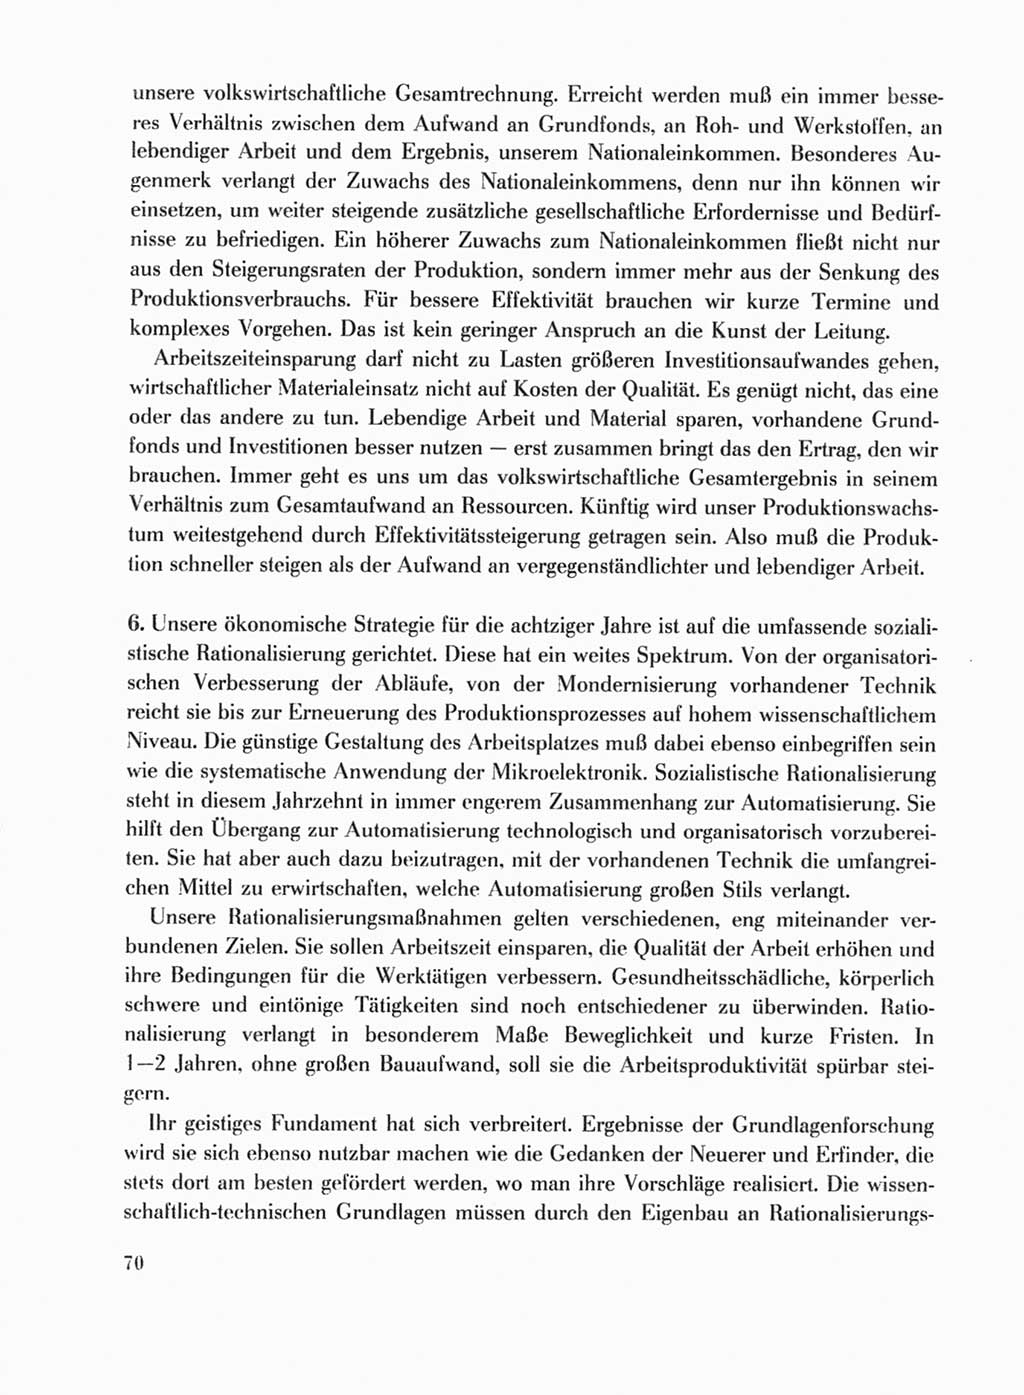 Protokoll der Verhandlungen des Ⅹ. Parteitages der Sozialistischen Einheitspartei Deutschlands (SED) [Deutsche Demokratische Republik (DDR)] 1981, Band 1, Seite 70 (Prot. Verh. Ⅹ. PT SED DDR 1981, Bd. 1, S. 70)